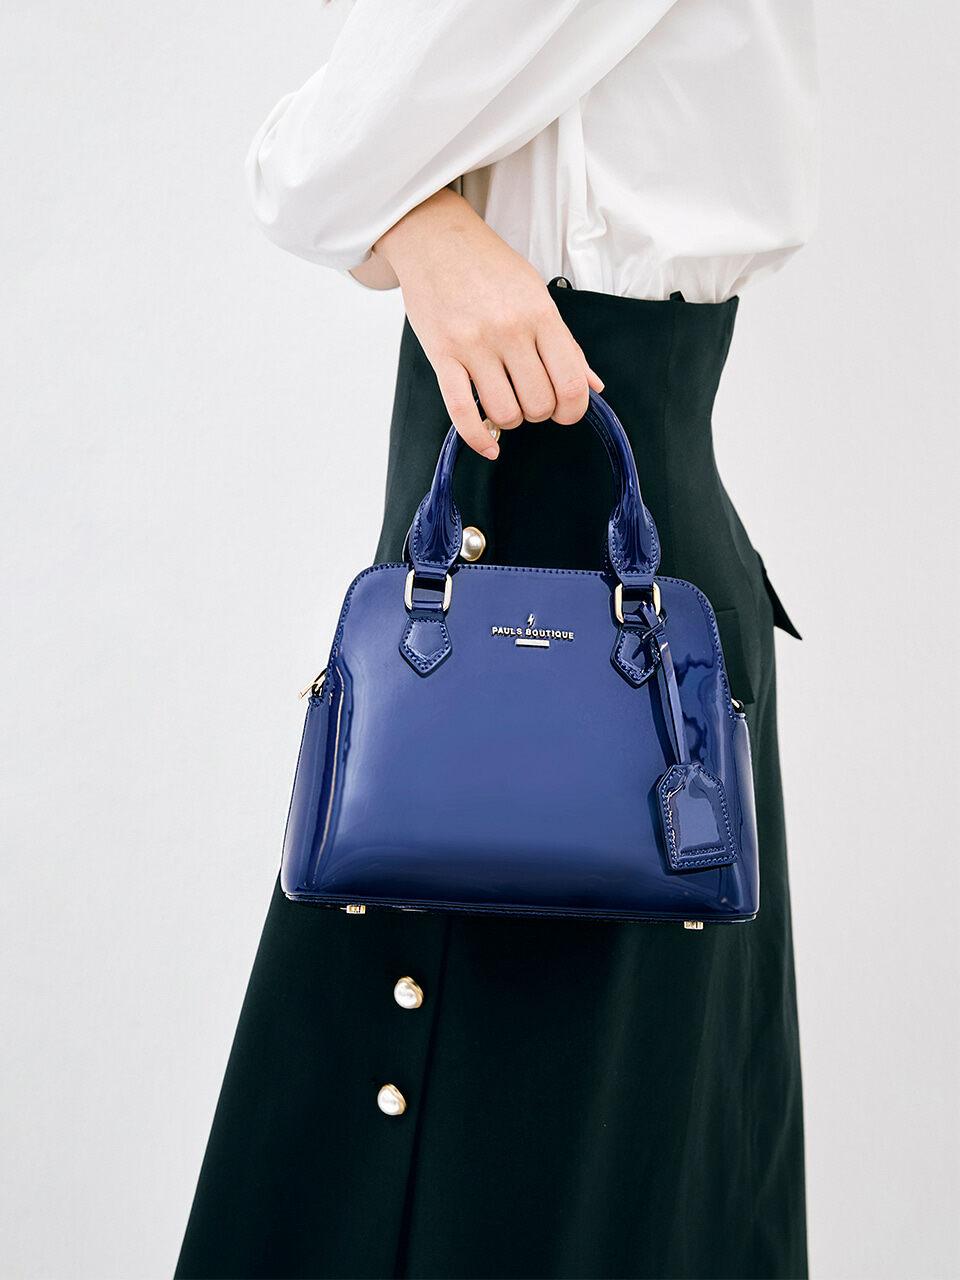 PAULS BOUTIQUE London Leather Portobello Tote Bag in Blue | Lyst